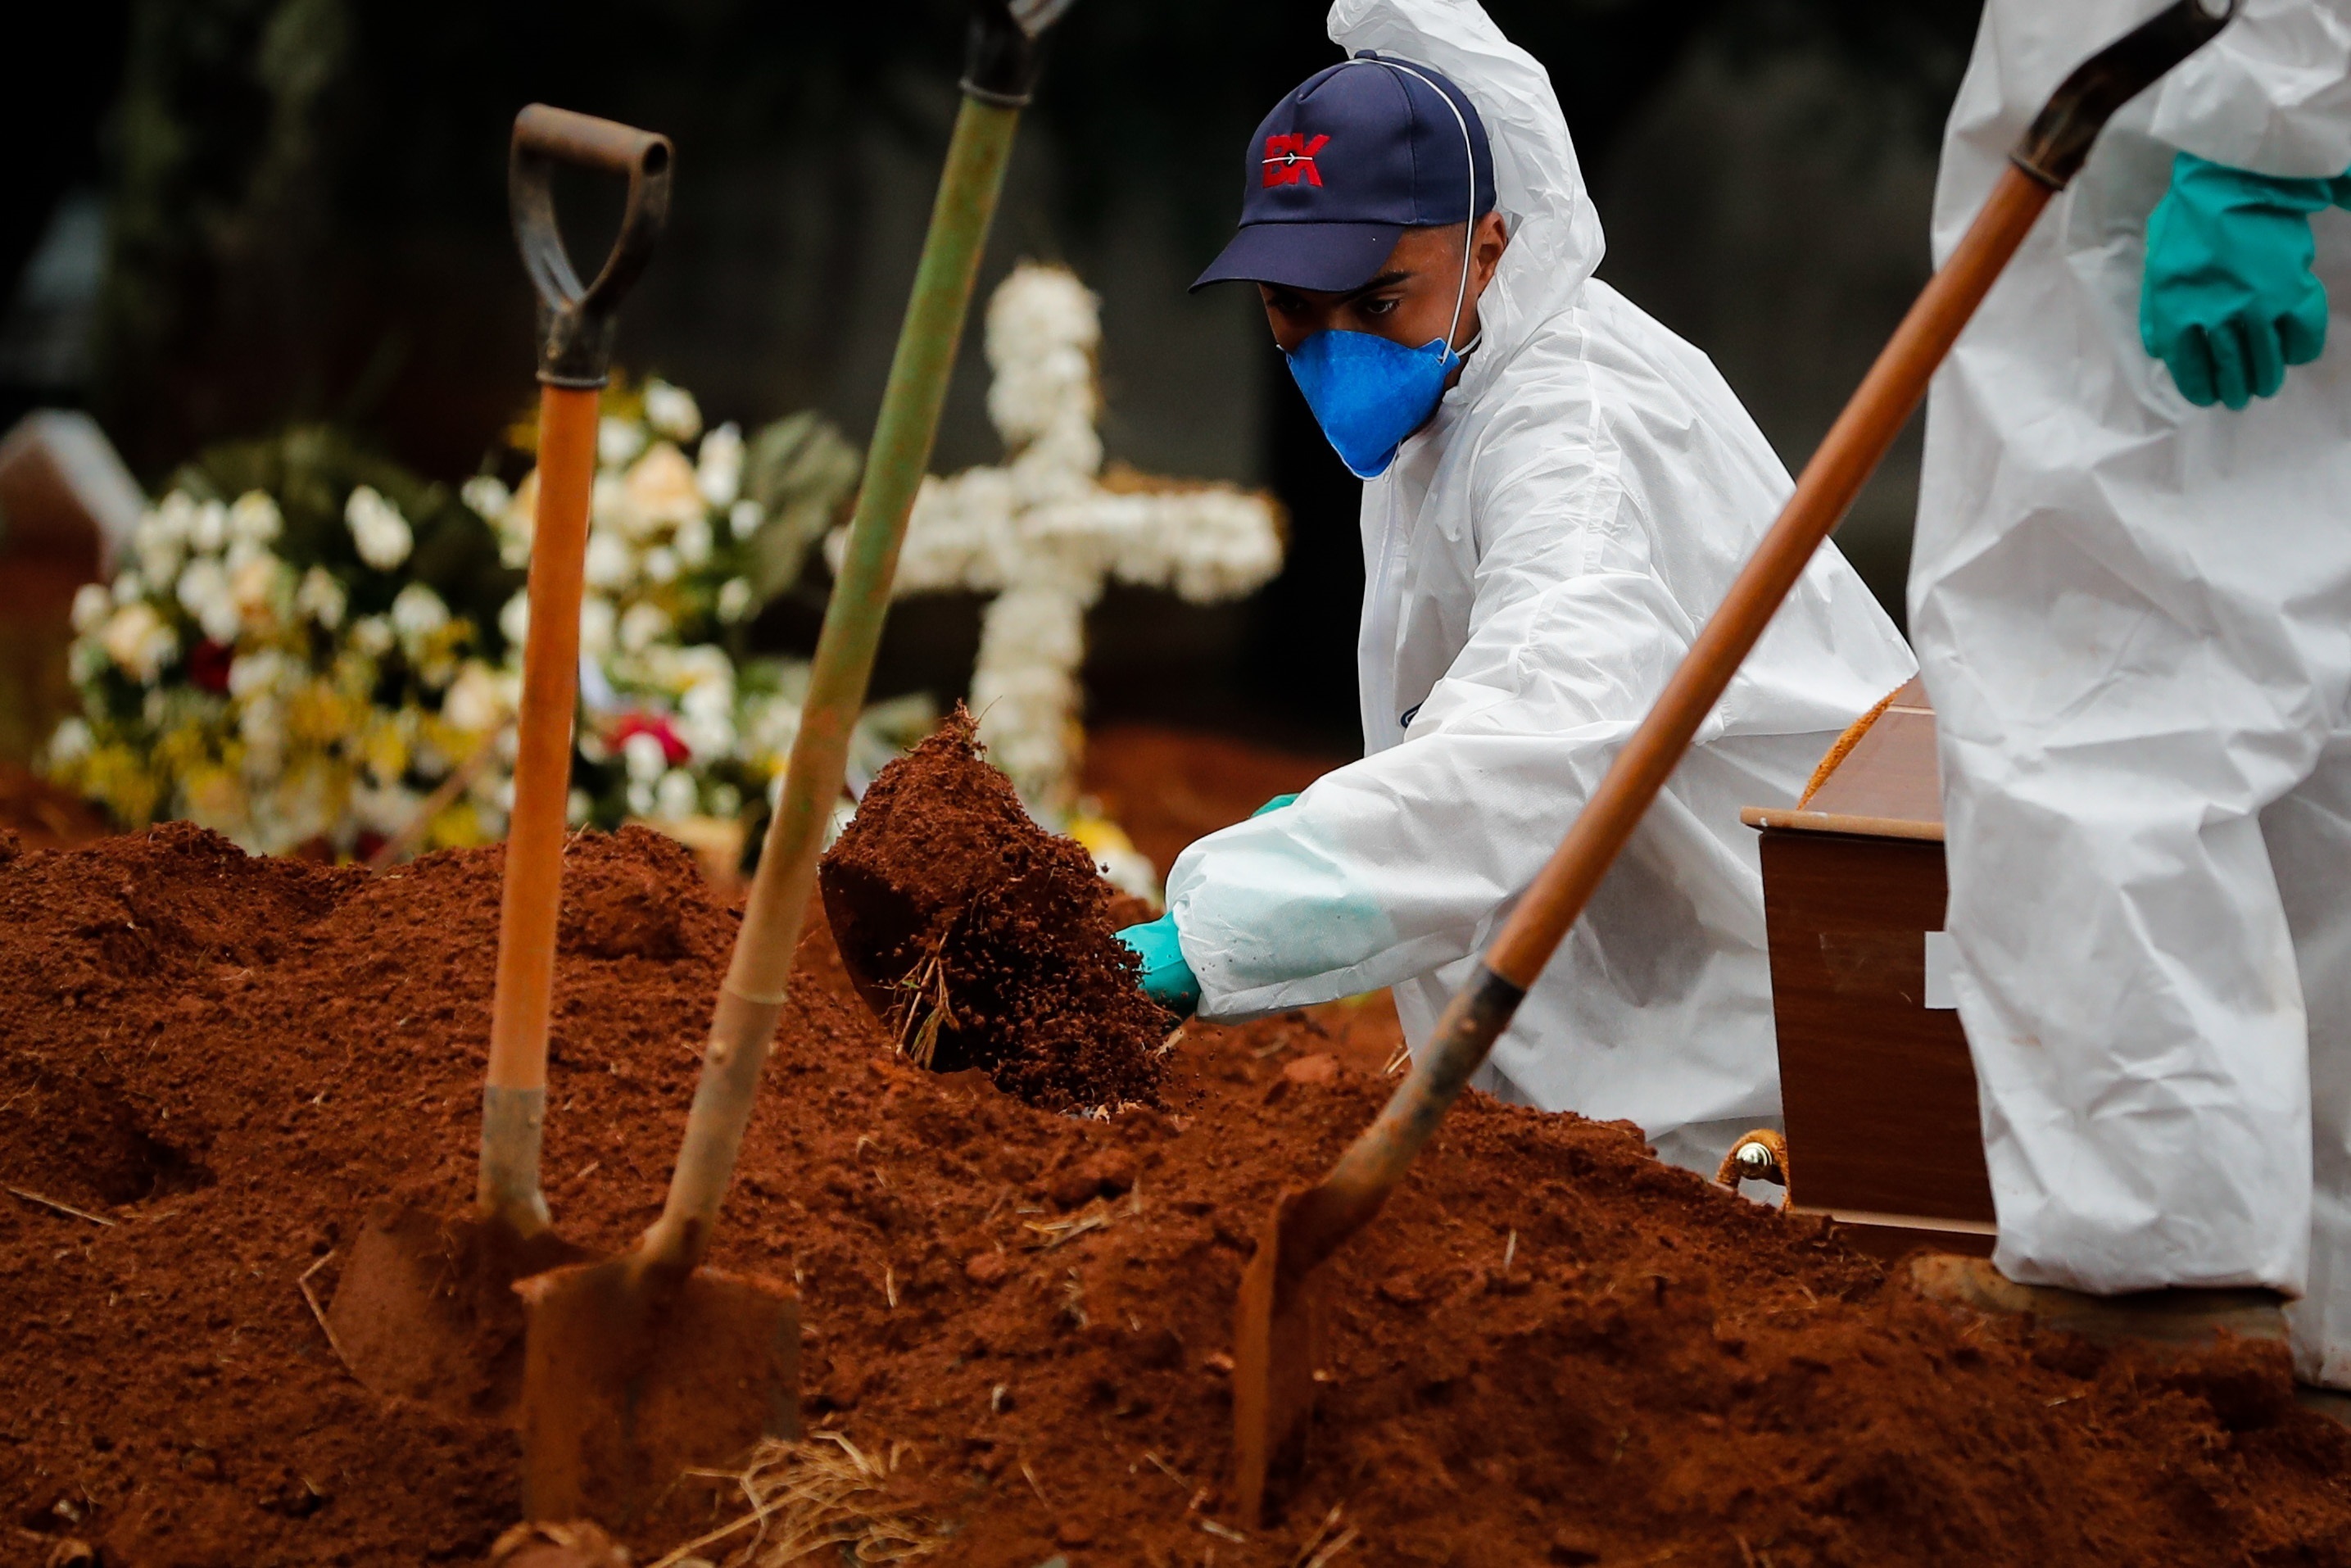 Brasil rozó los 13 millones de contagios en el peor momento de la pandemia